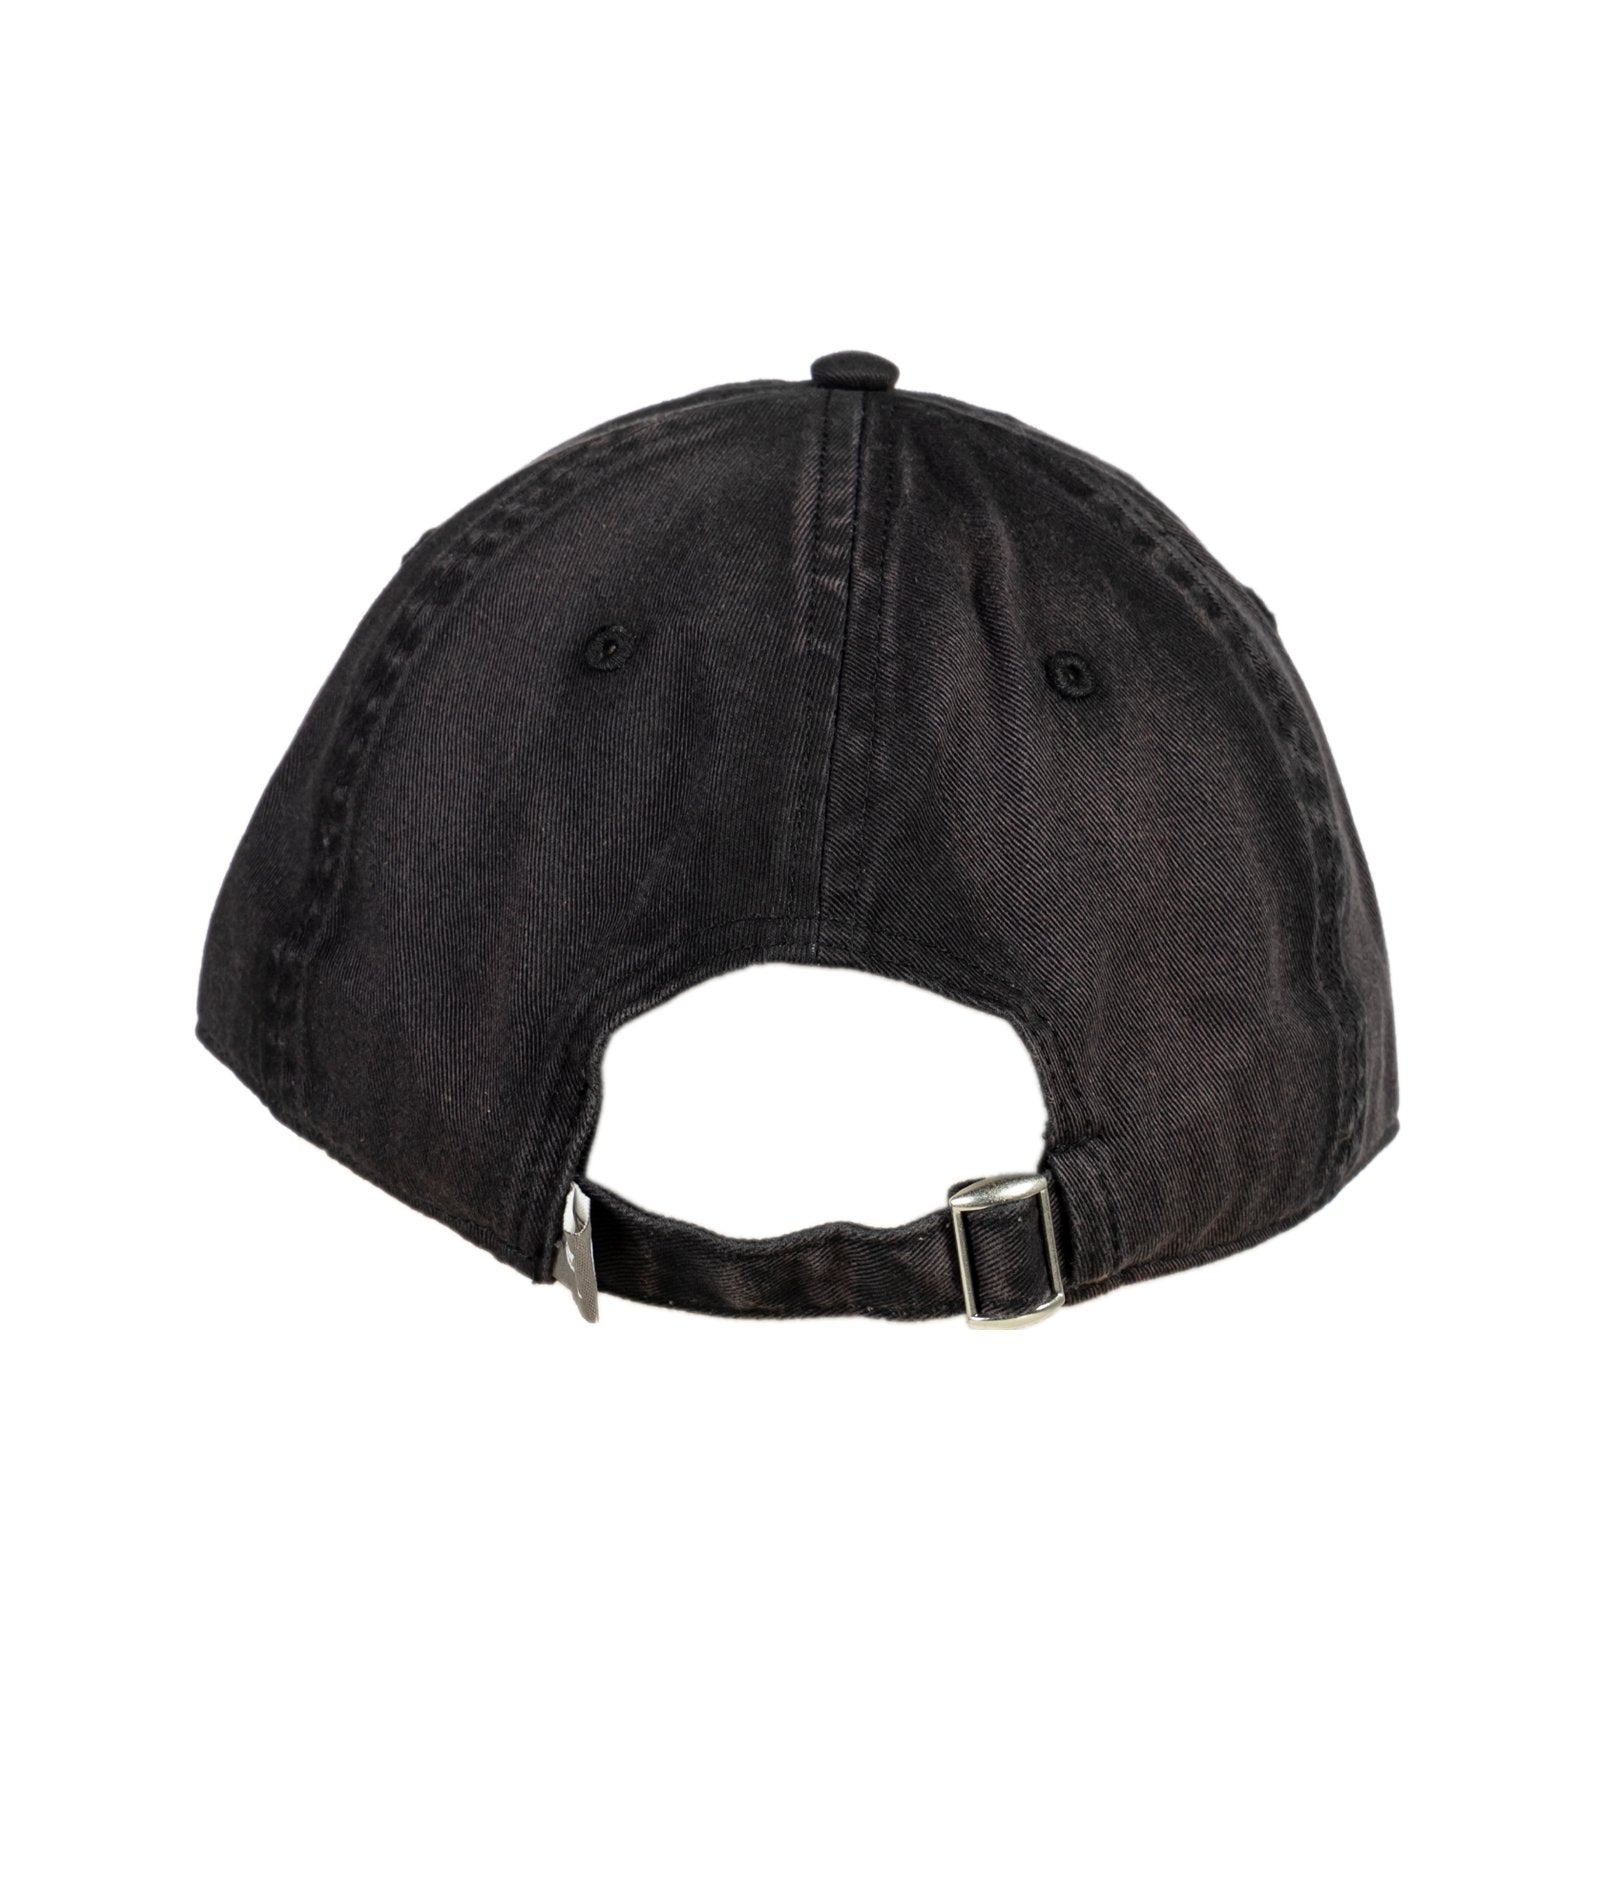 Zen Philosopher Vintage Black Relaxed Adjustable Hat